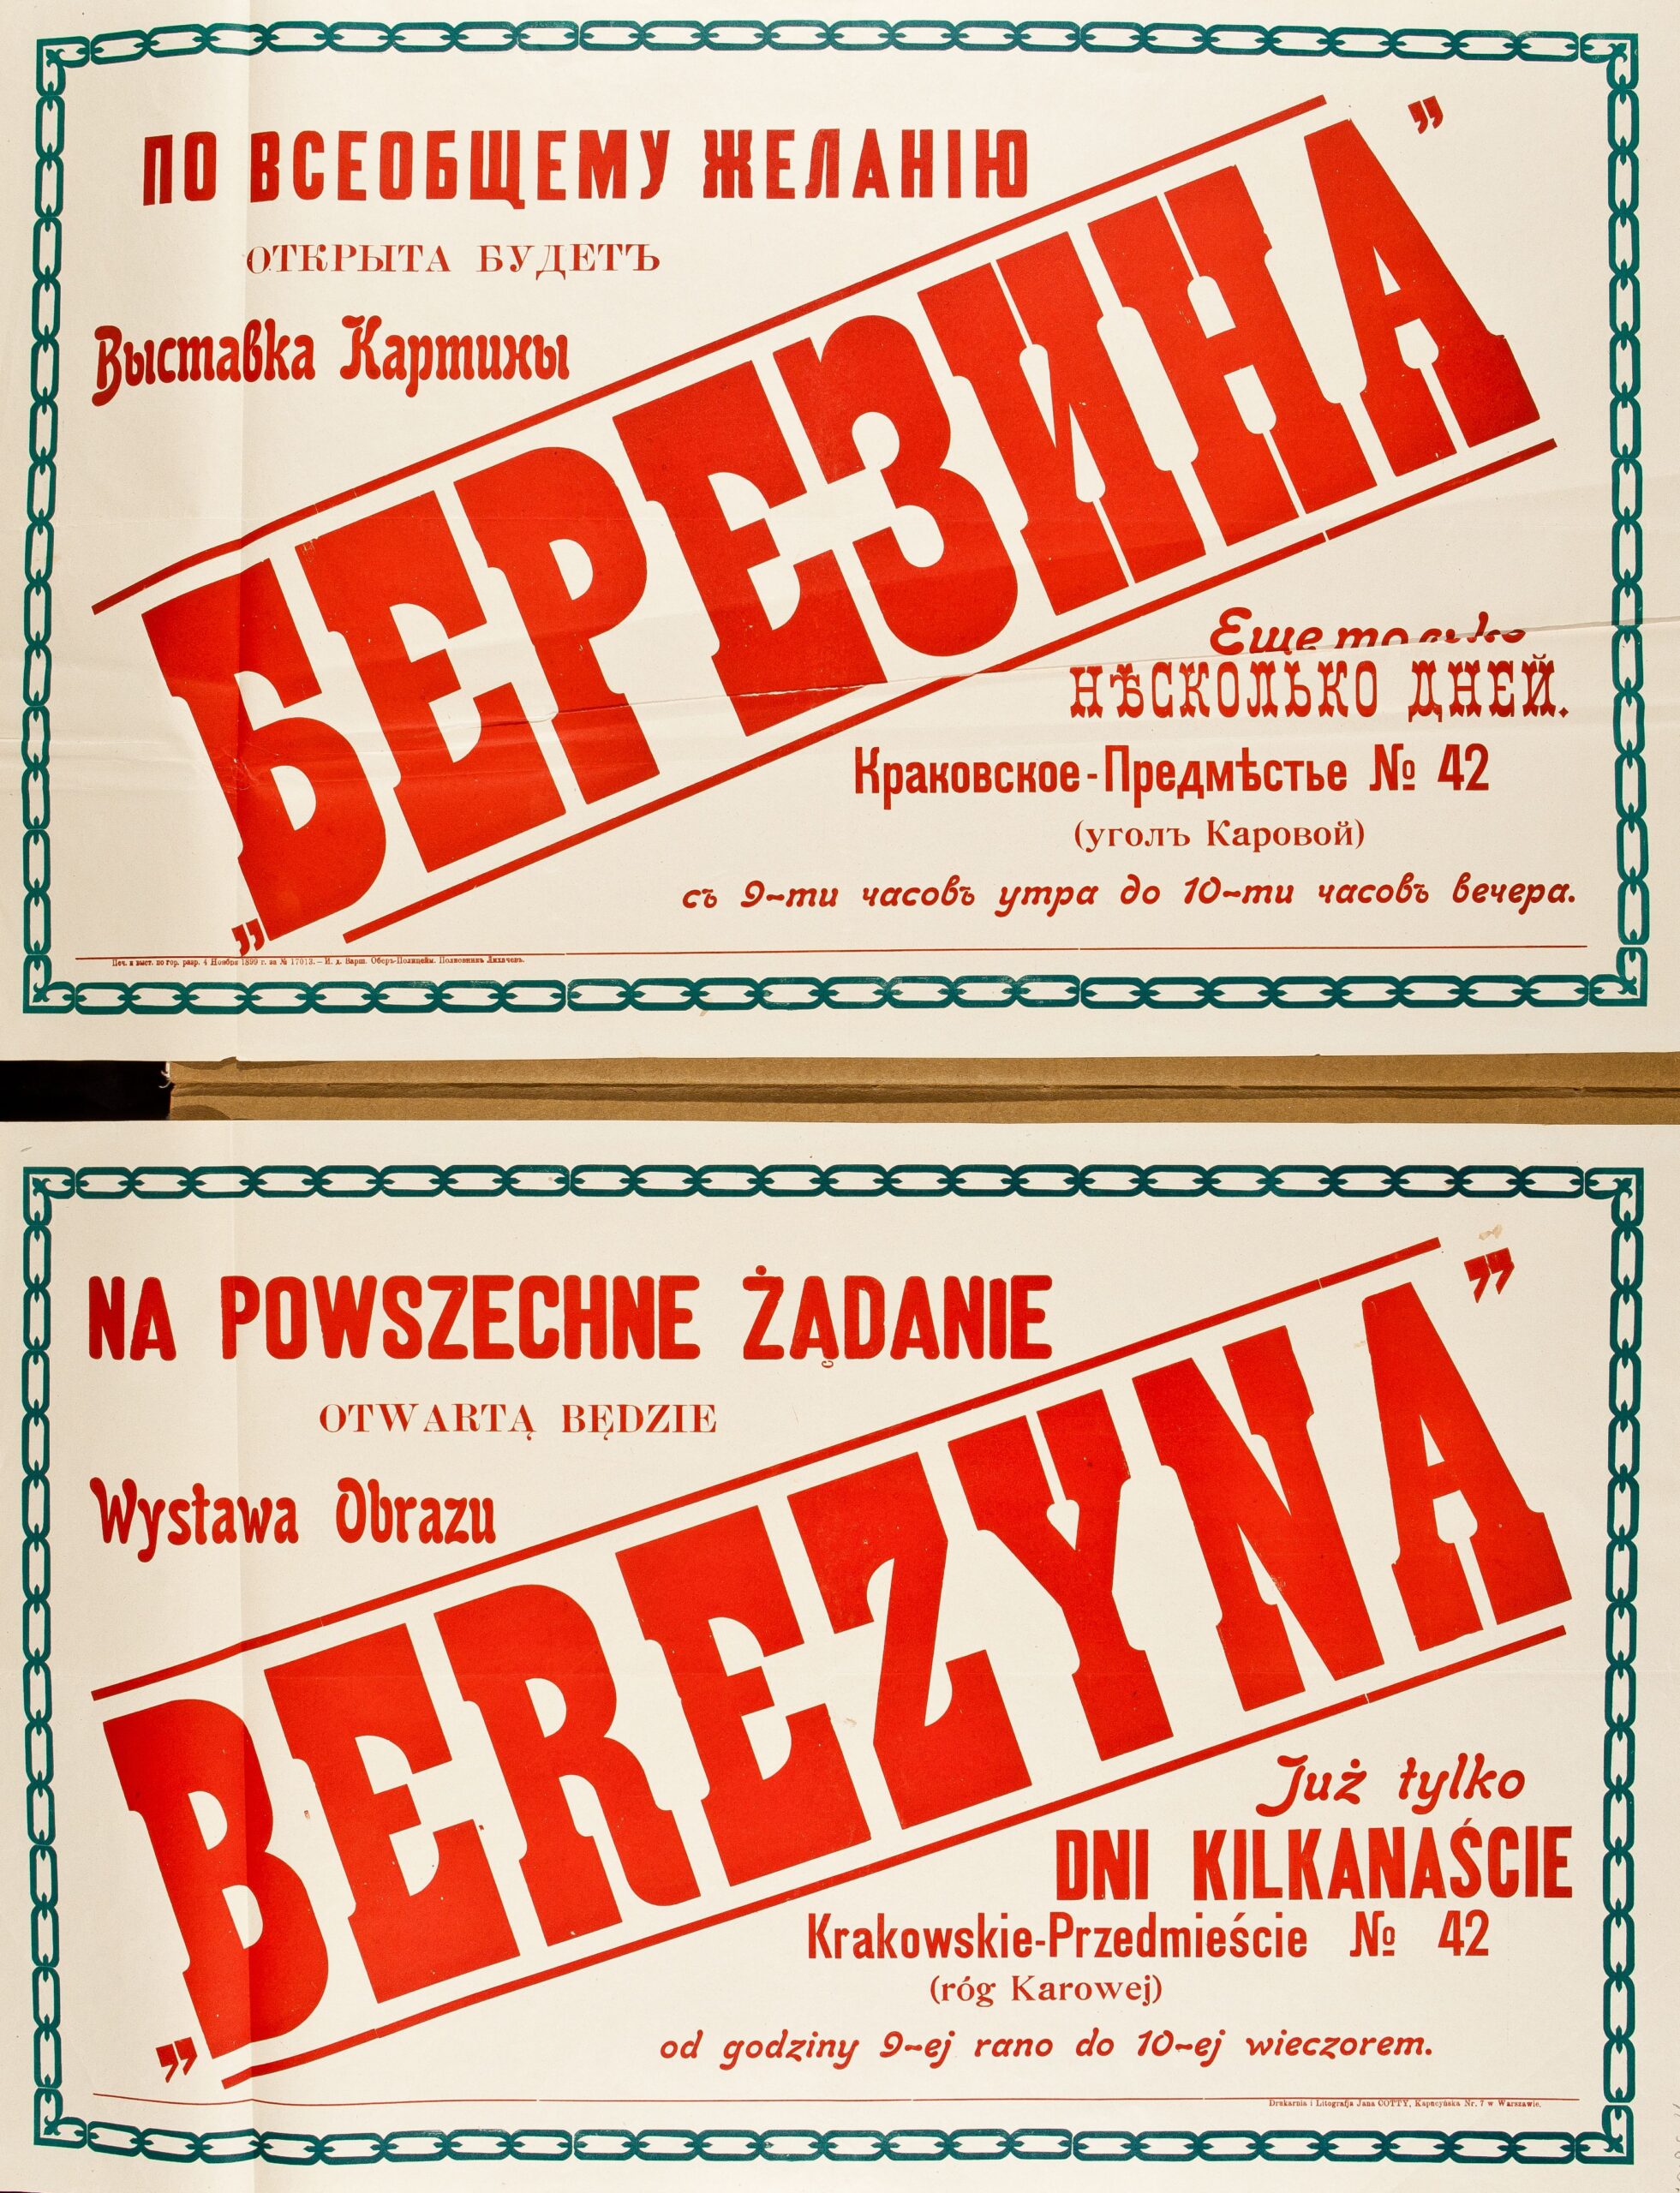 Афиши к выставке панорамы «Березина» в краковском предместье г. Варшавы, 1899